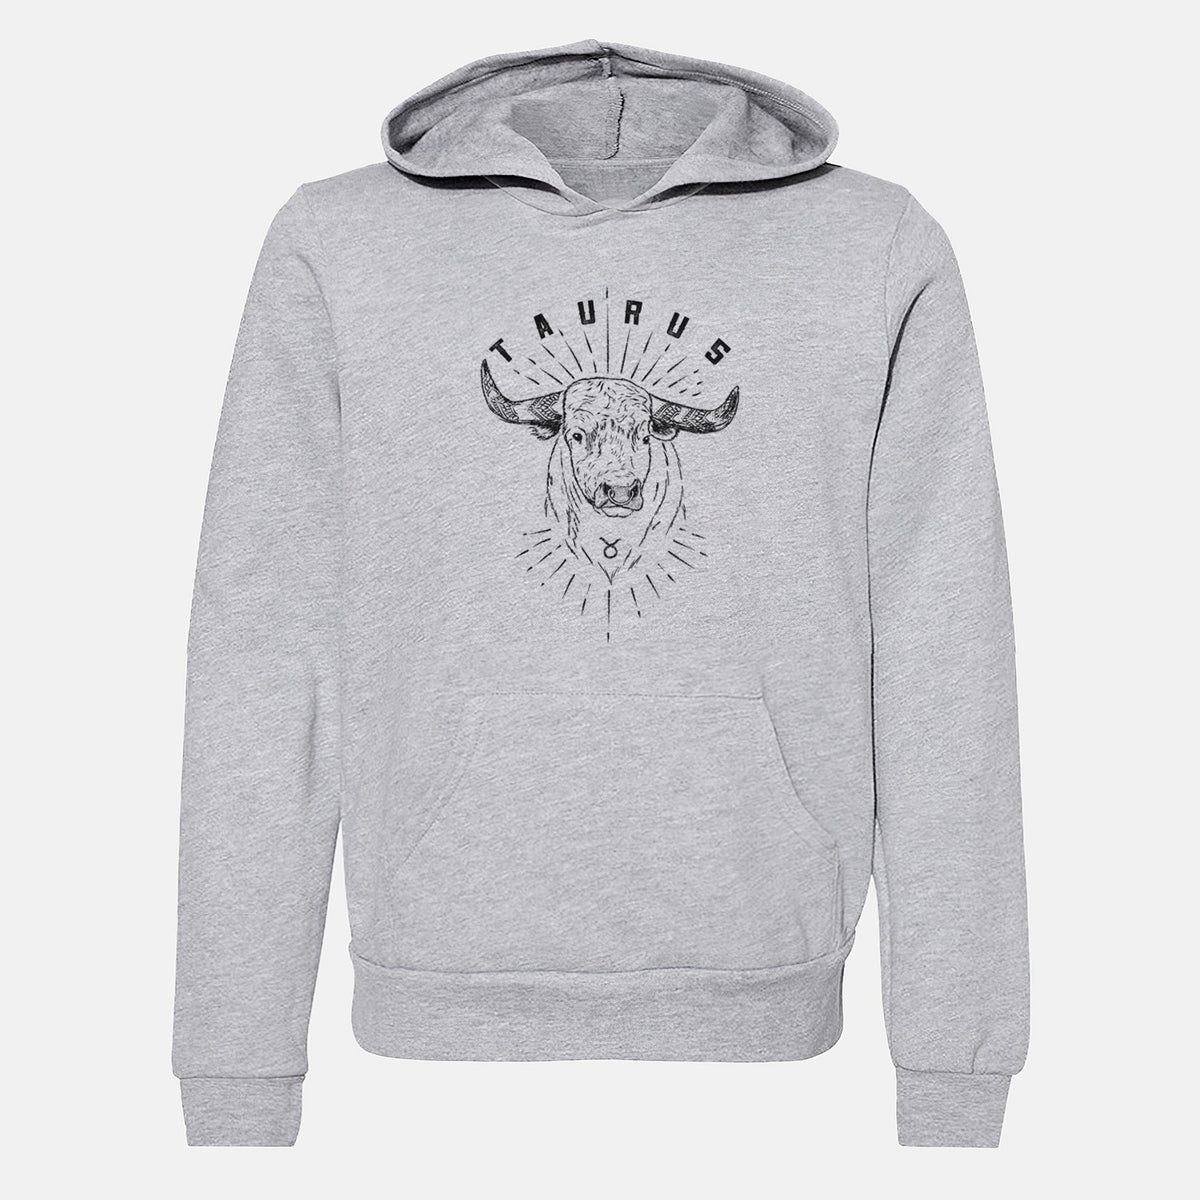 Taurus - Bull - Youth Hoodie Sweatshirt